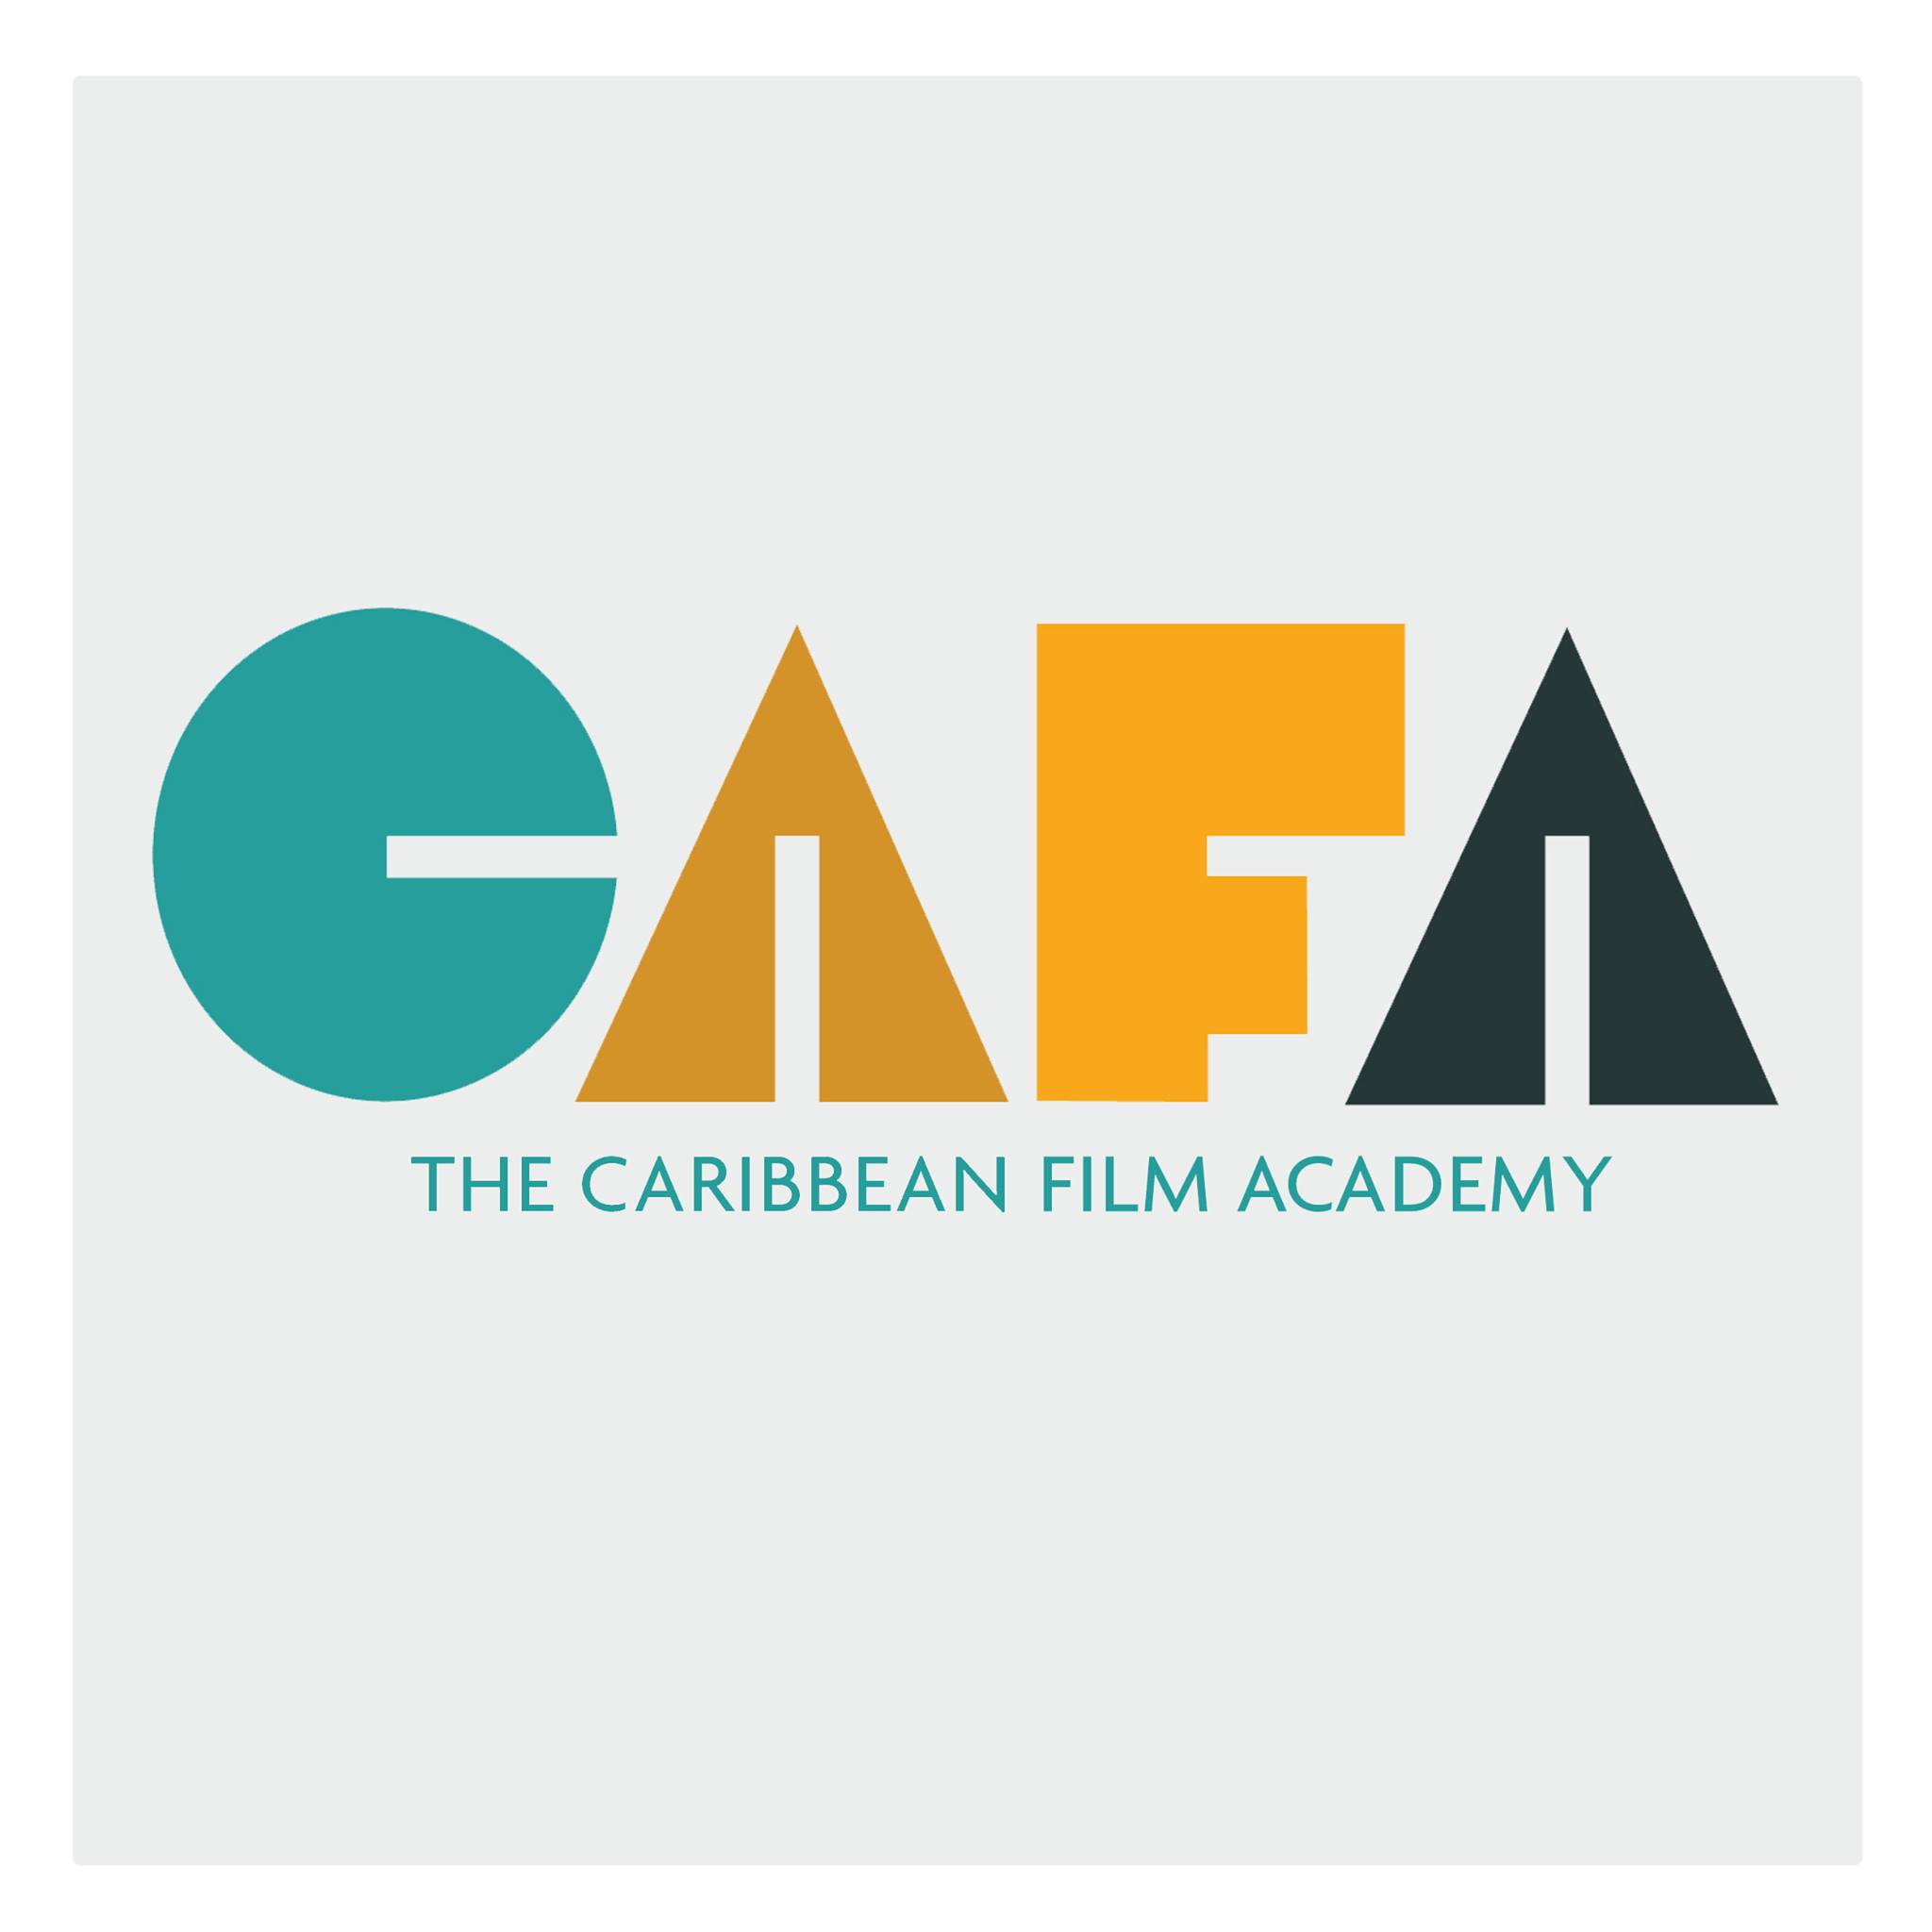 The Caribbean Film Academy